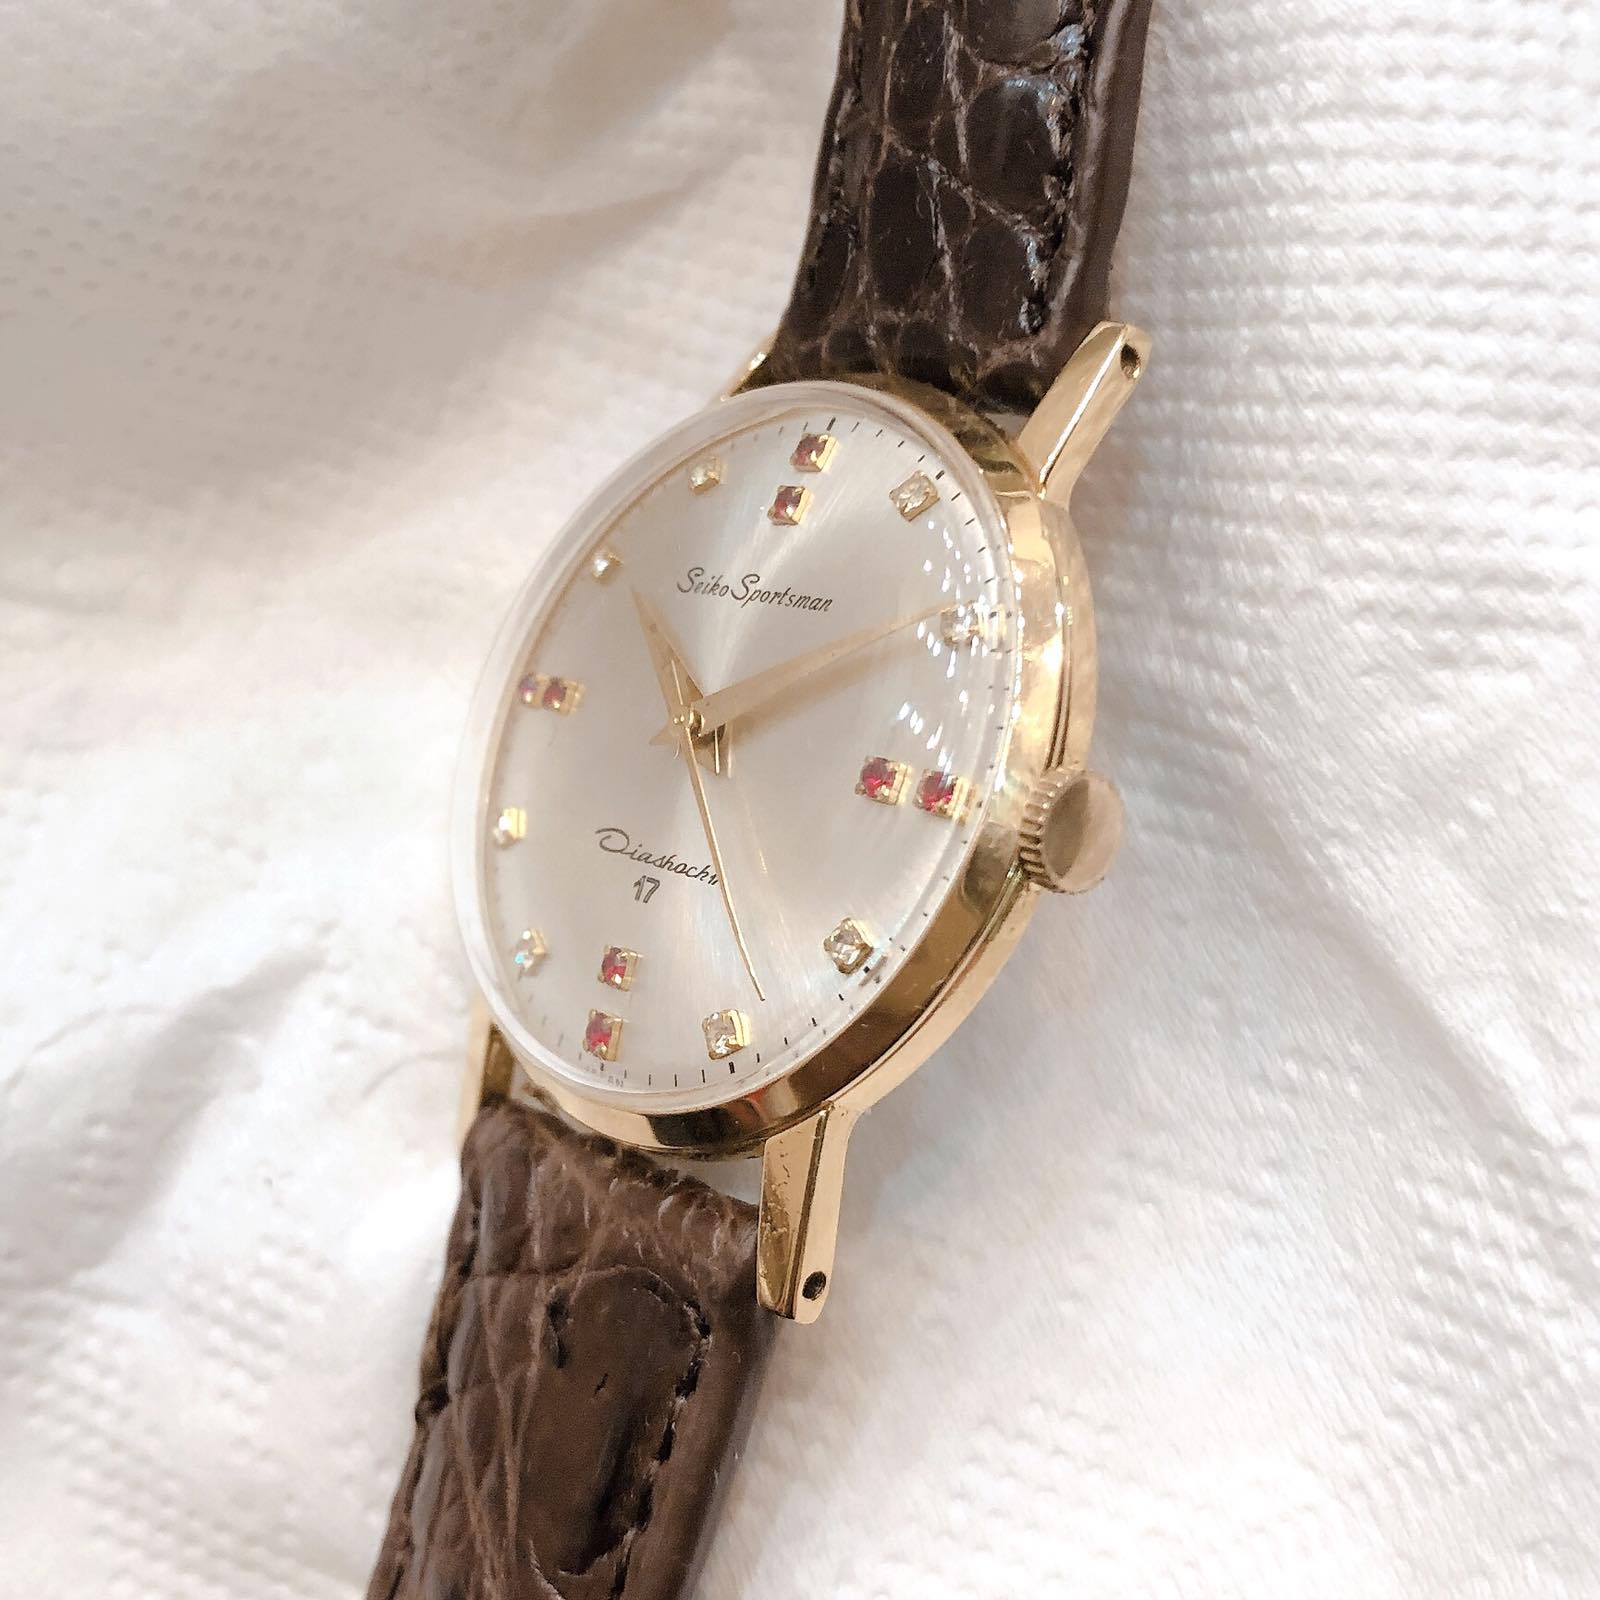 Đồng hồ cổ Seiko Sportman lên dây lacke 18k chính hãng nhật bản